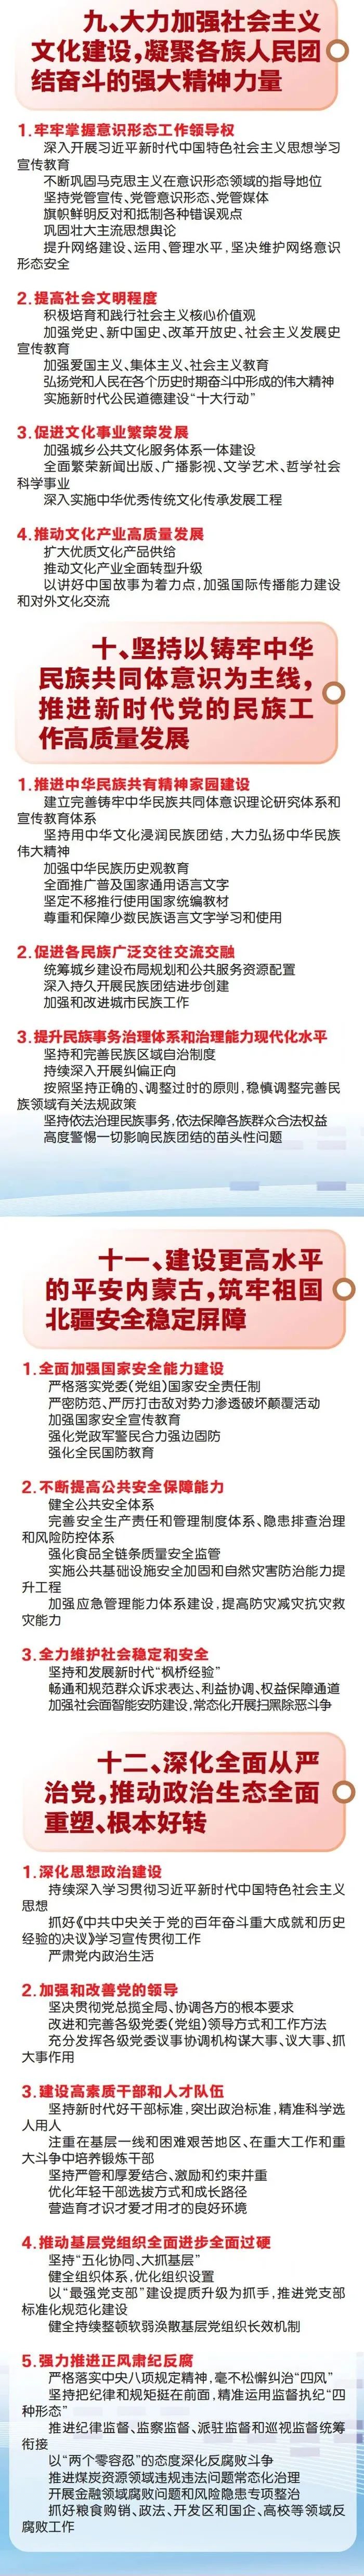 图解丨自治区第十一次党代会报告重点来了 (http://www.airsdon.com/) 国内 第6张